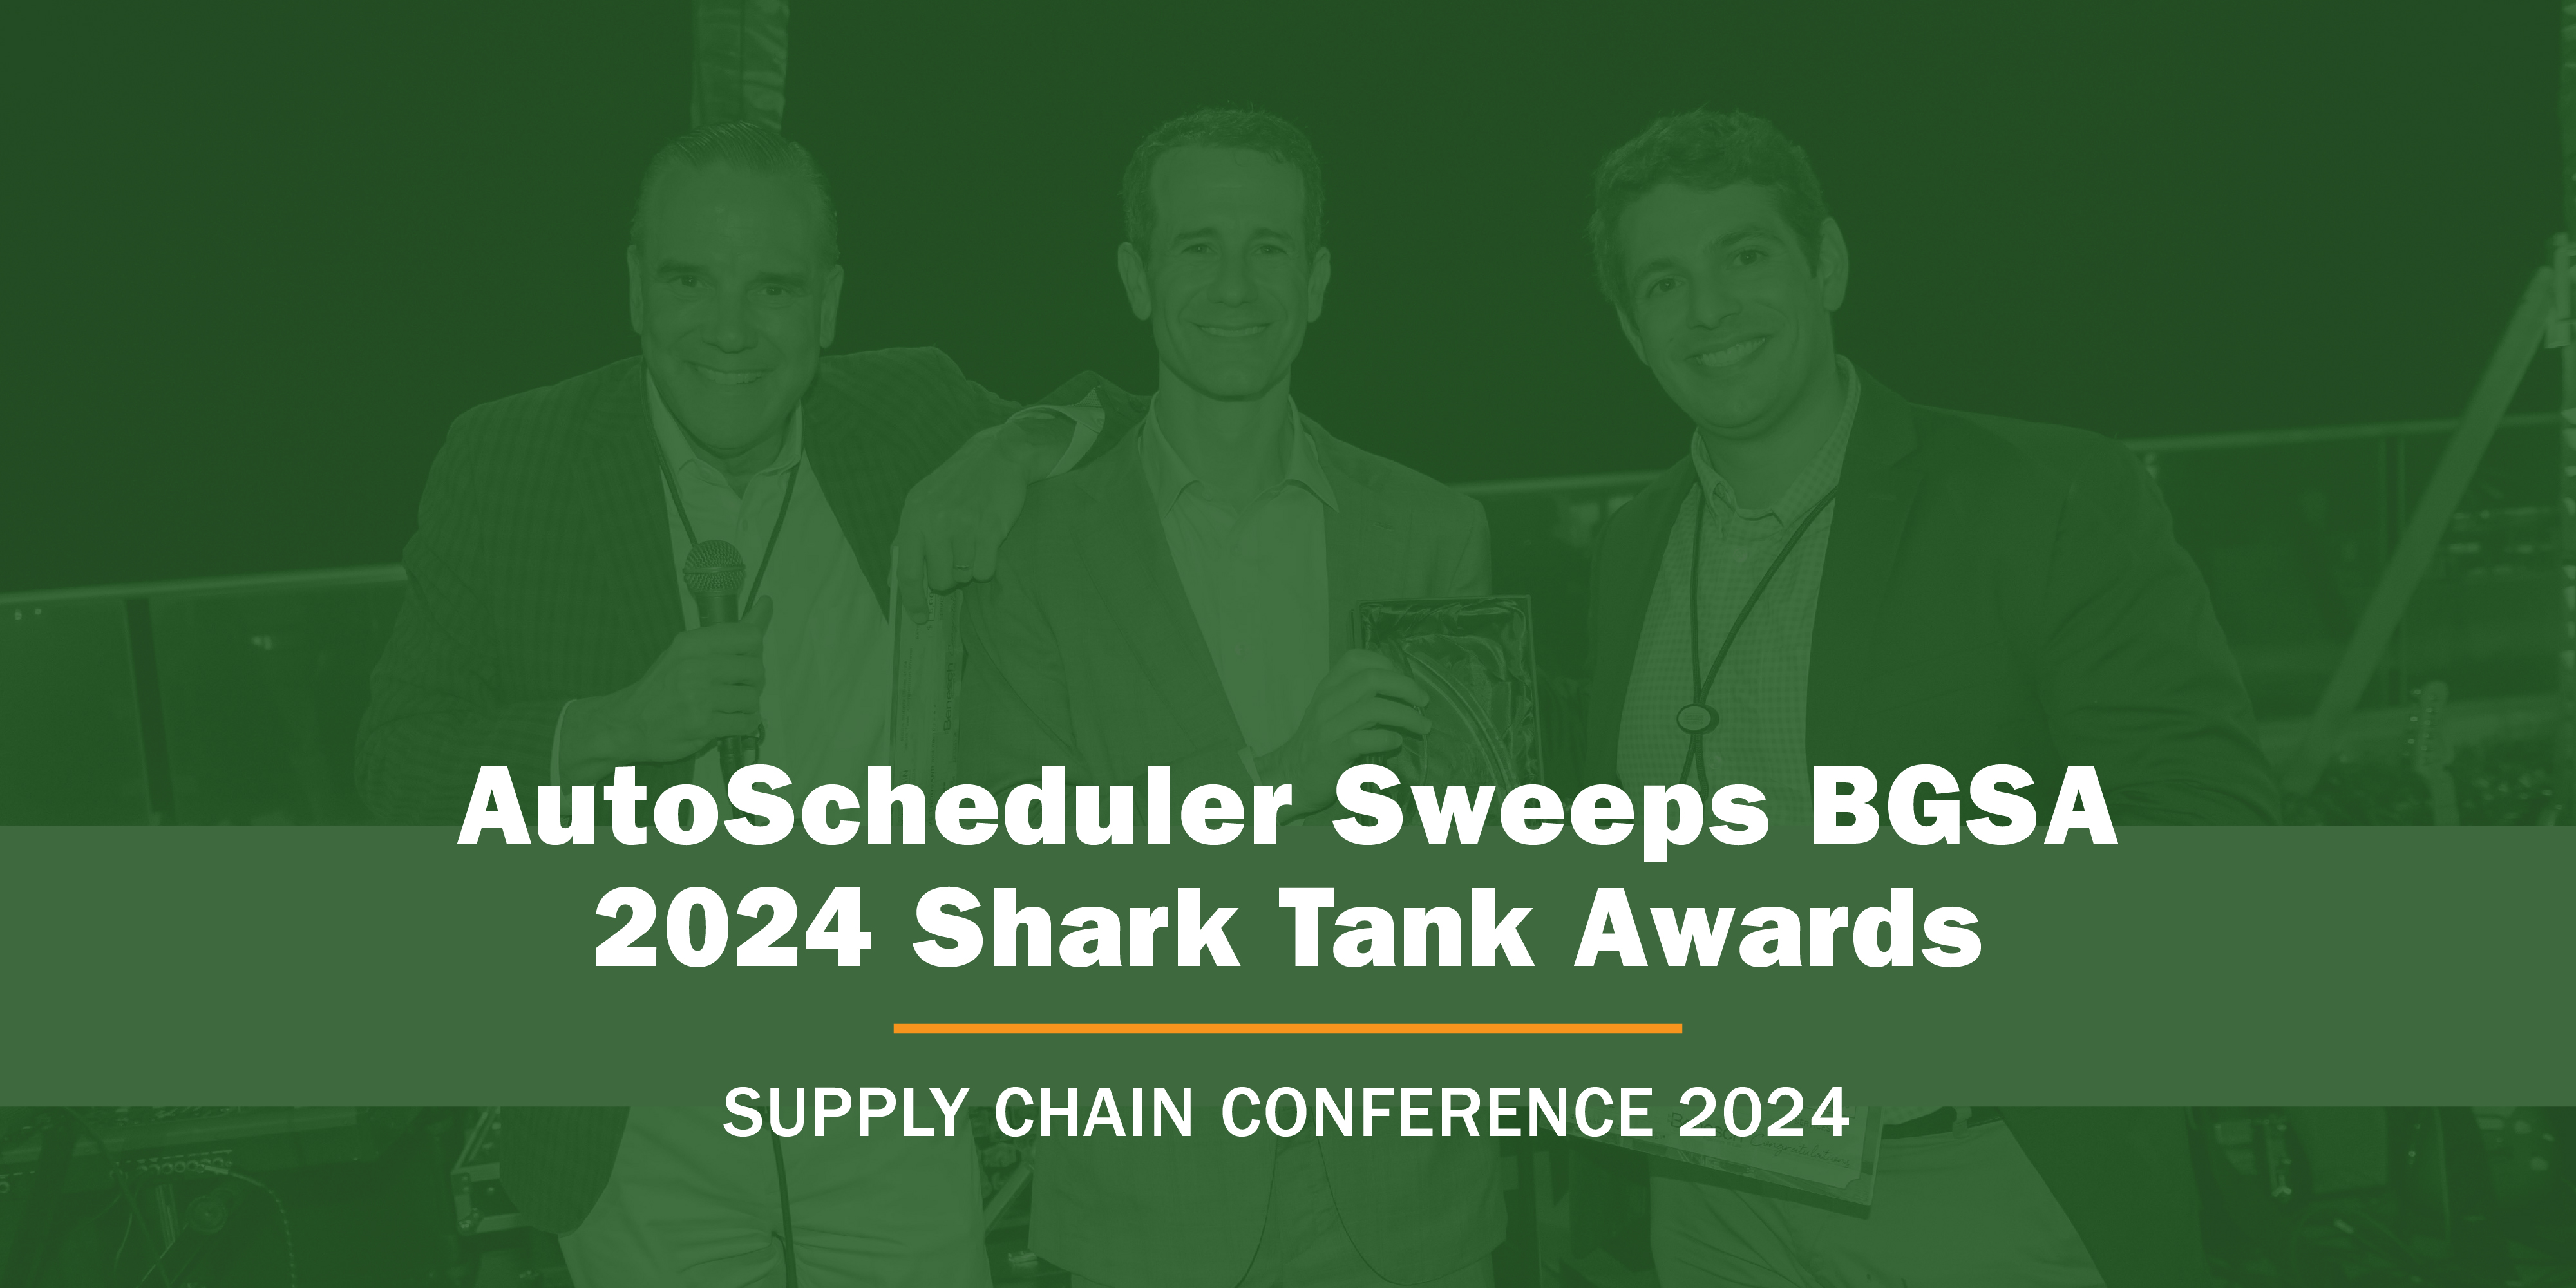 AutoScheduler Sweeps BGSA 2024 Shark Tank Awards